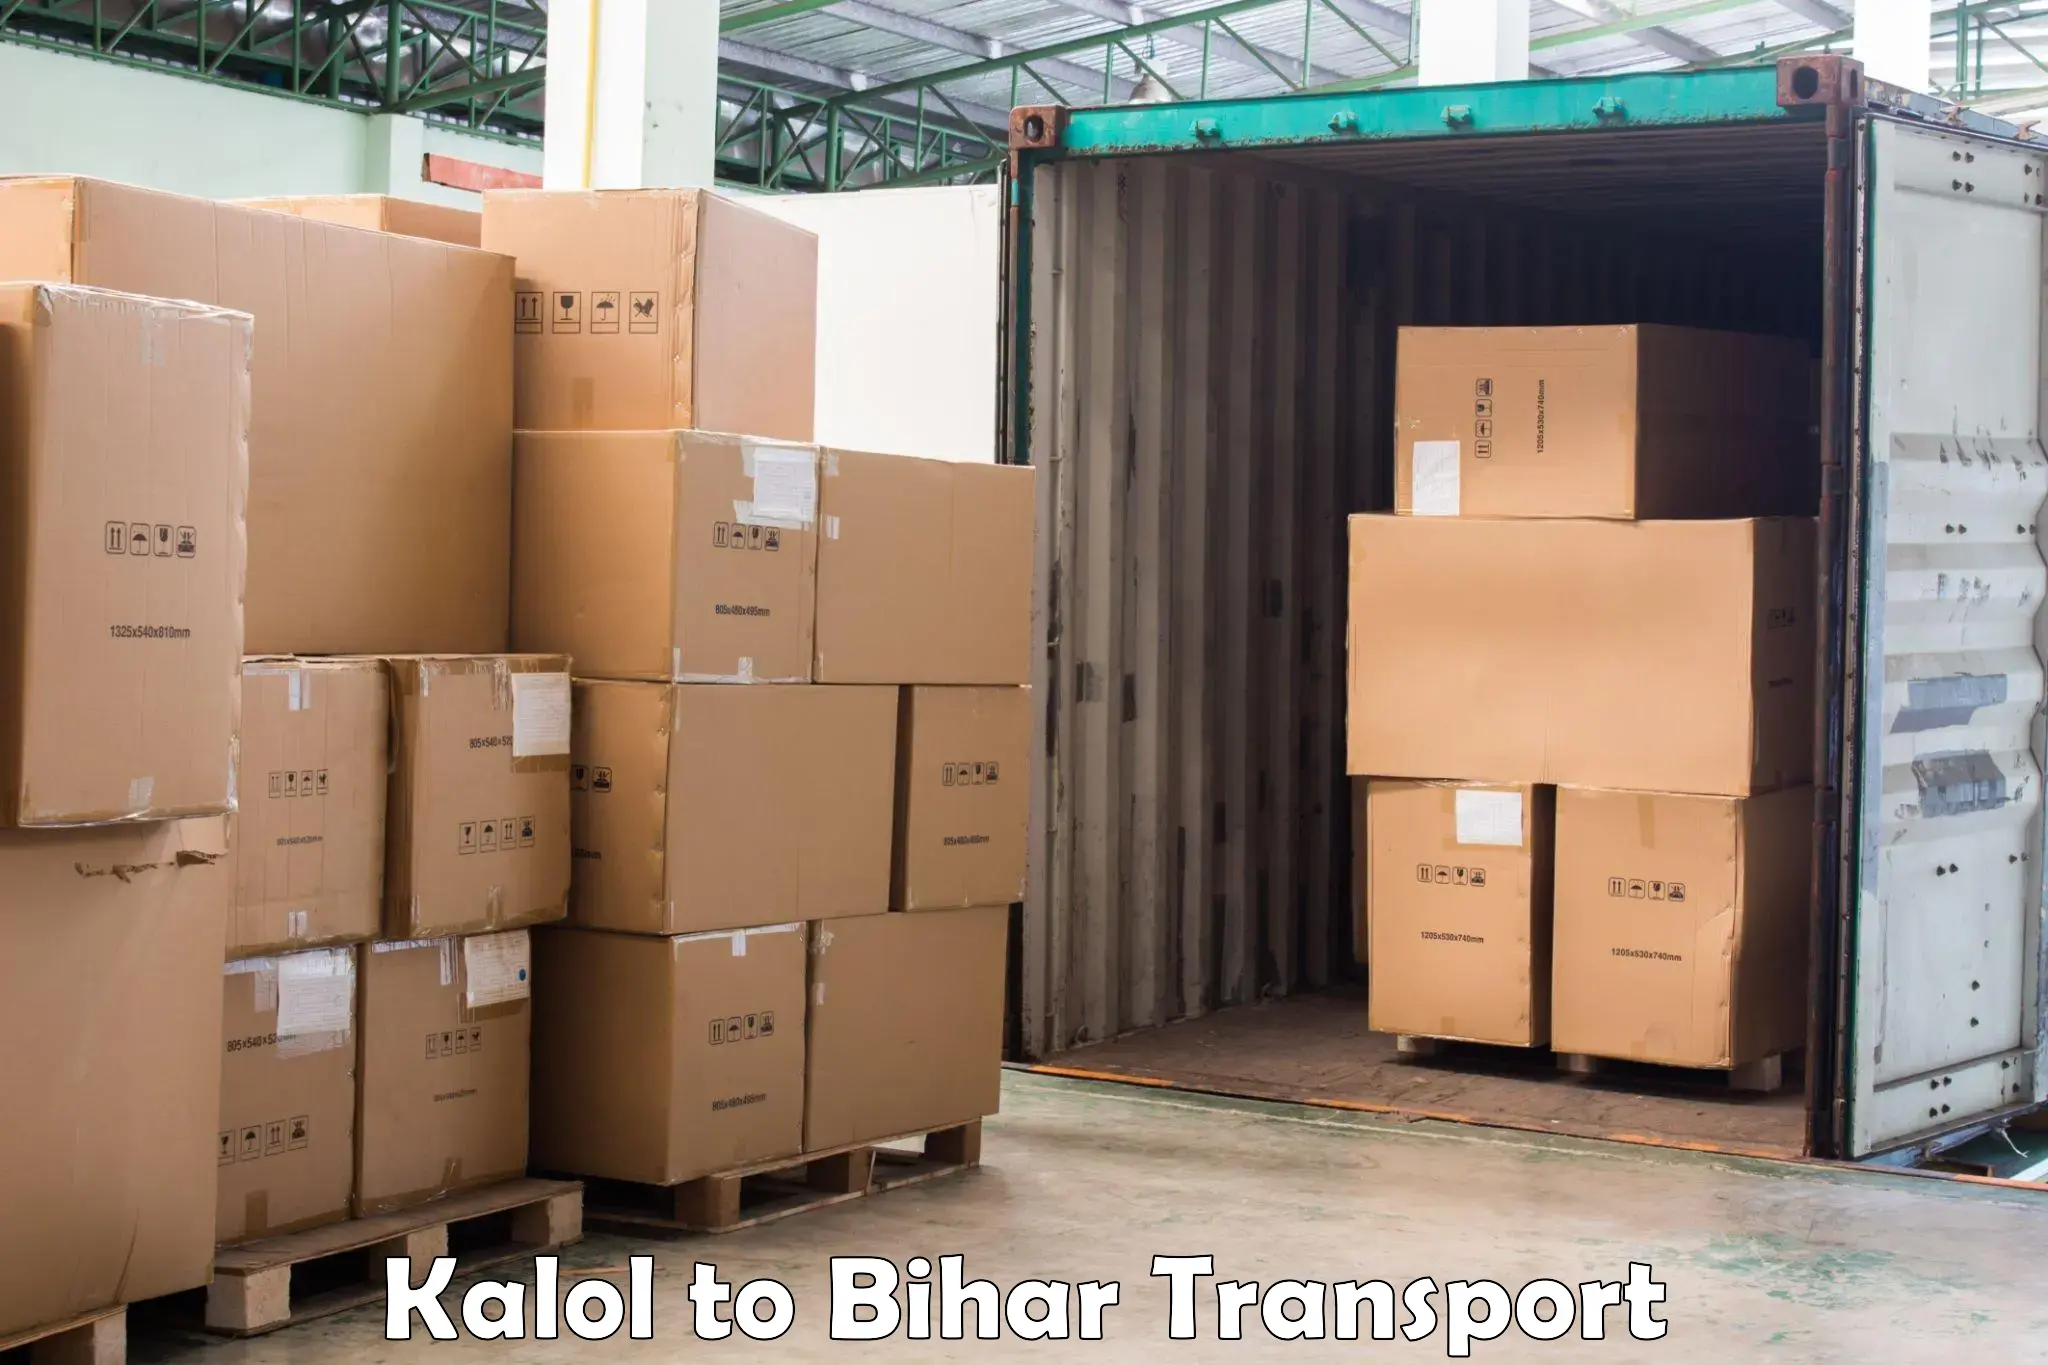 Express transport services Kalol to Bhorey